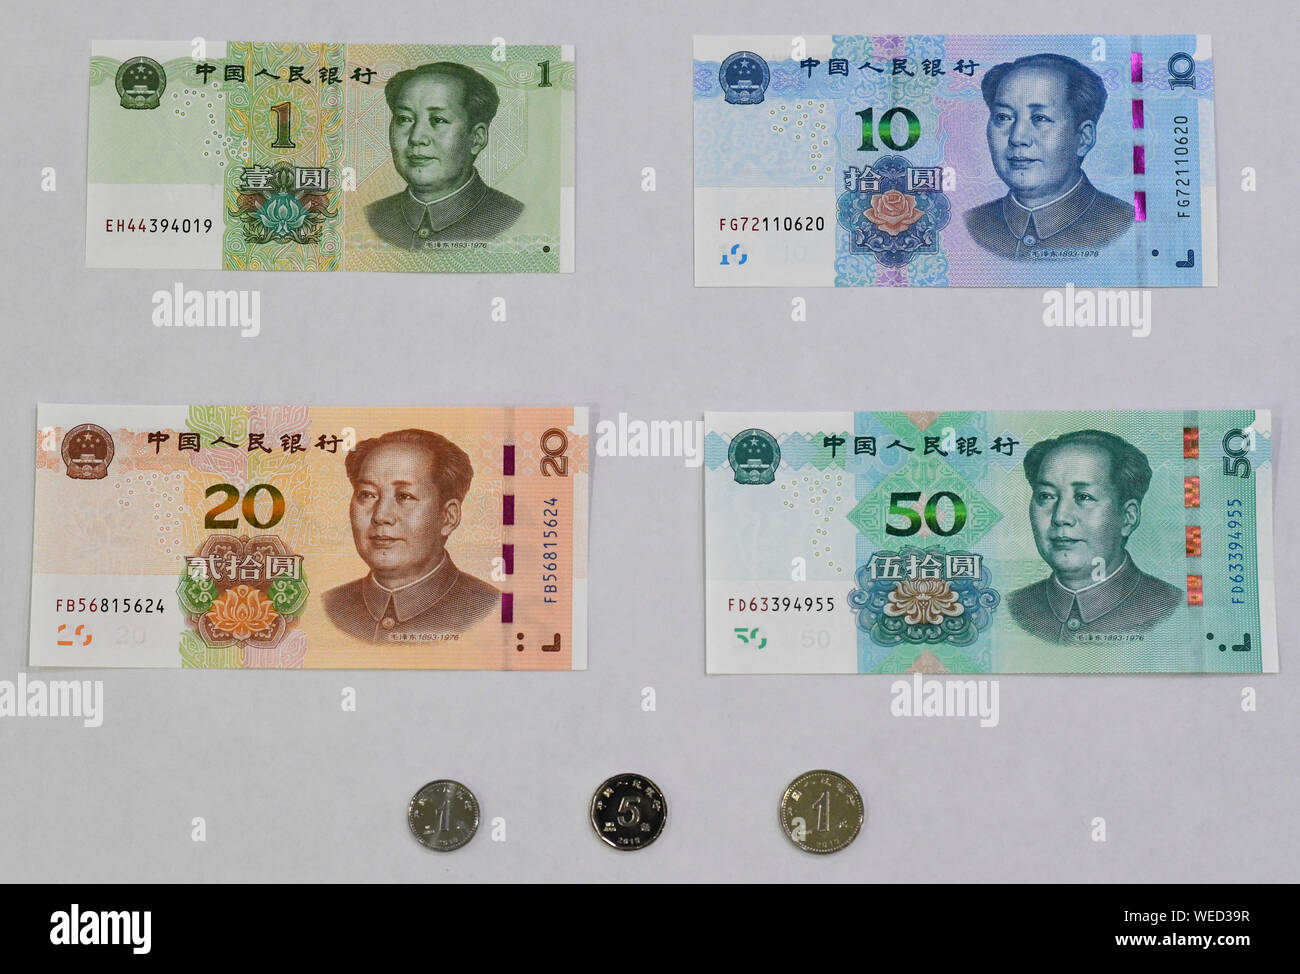 (190830) -- BEIJING, 30 août 2019 (Xinhua) -- Photo prise le 30 août 2019 présente un ensemble des billets et des pièces incluses dans l'édition 2019 de la cinquième série du renminbi. Une nouvelle édition de la cinquième série de la monnaie chinoise, le renminbi ou le yuan, a été officiellement lancé vendredi avec des couleurs plus claires et plus sophistiquées caractéristiques anticontrefaçon. La cinquième série de renminbi a été introduit en 1999. (Xinhua/Chen Yehua) Banque D'Images